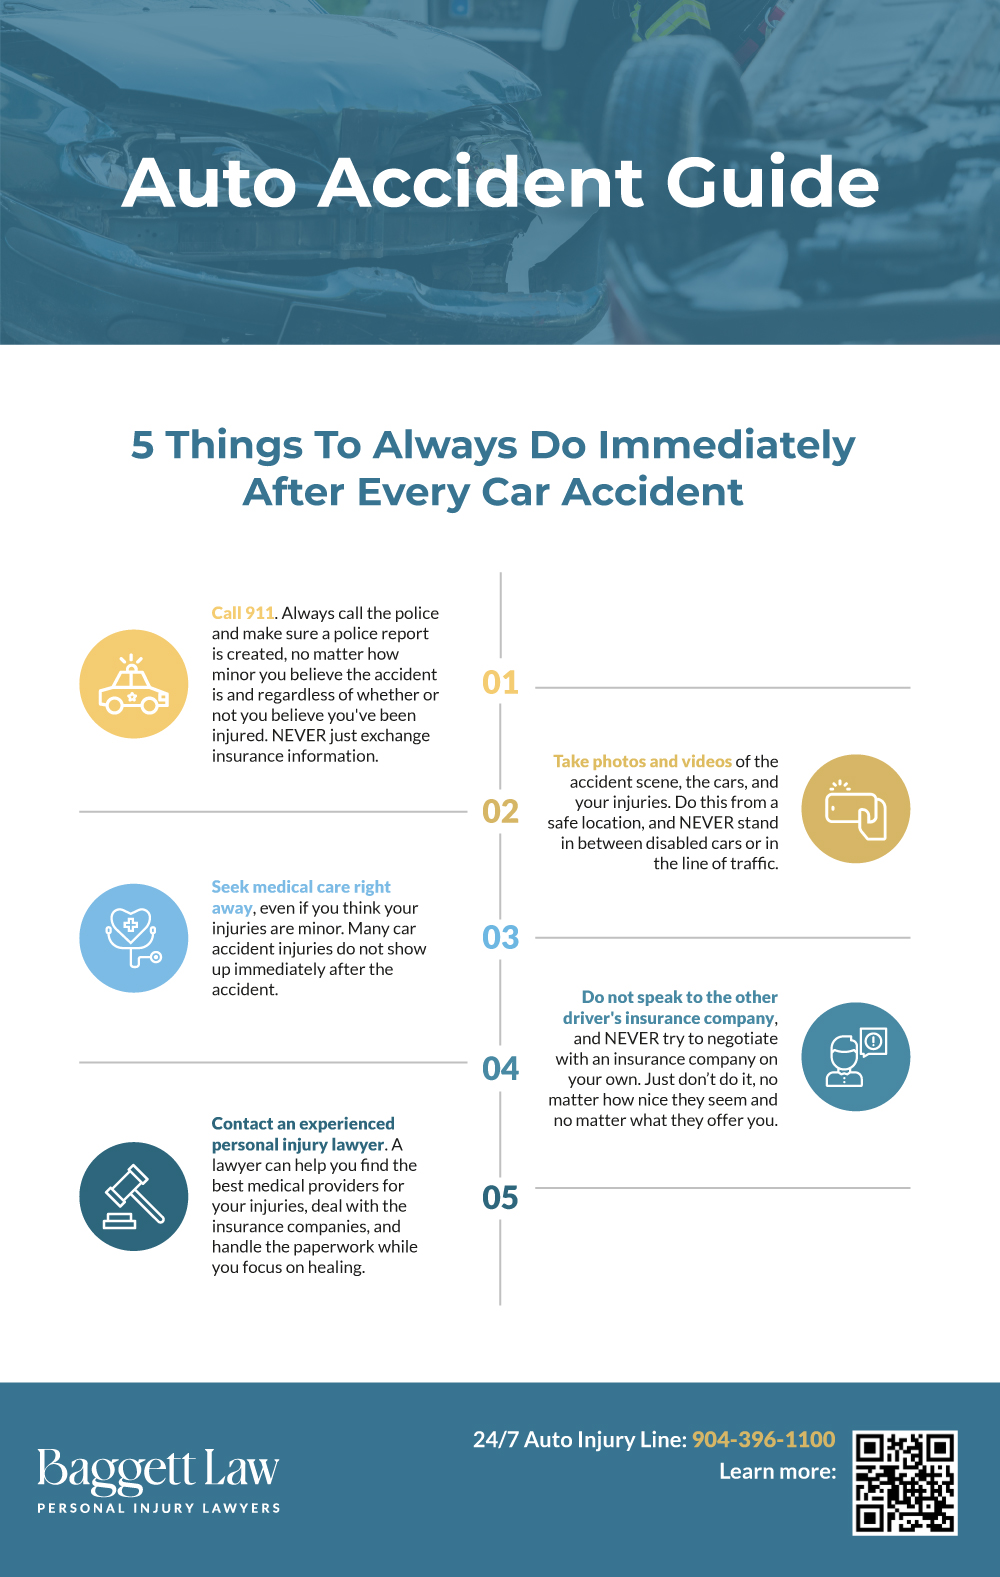 Baggett Law Auto Accident Guide